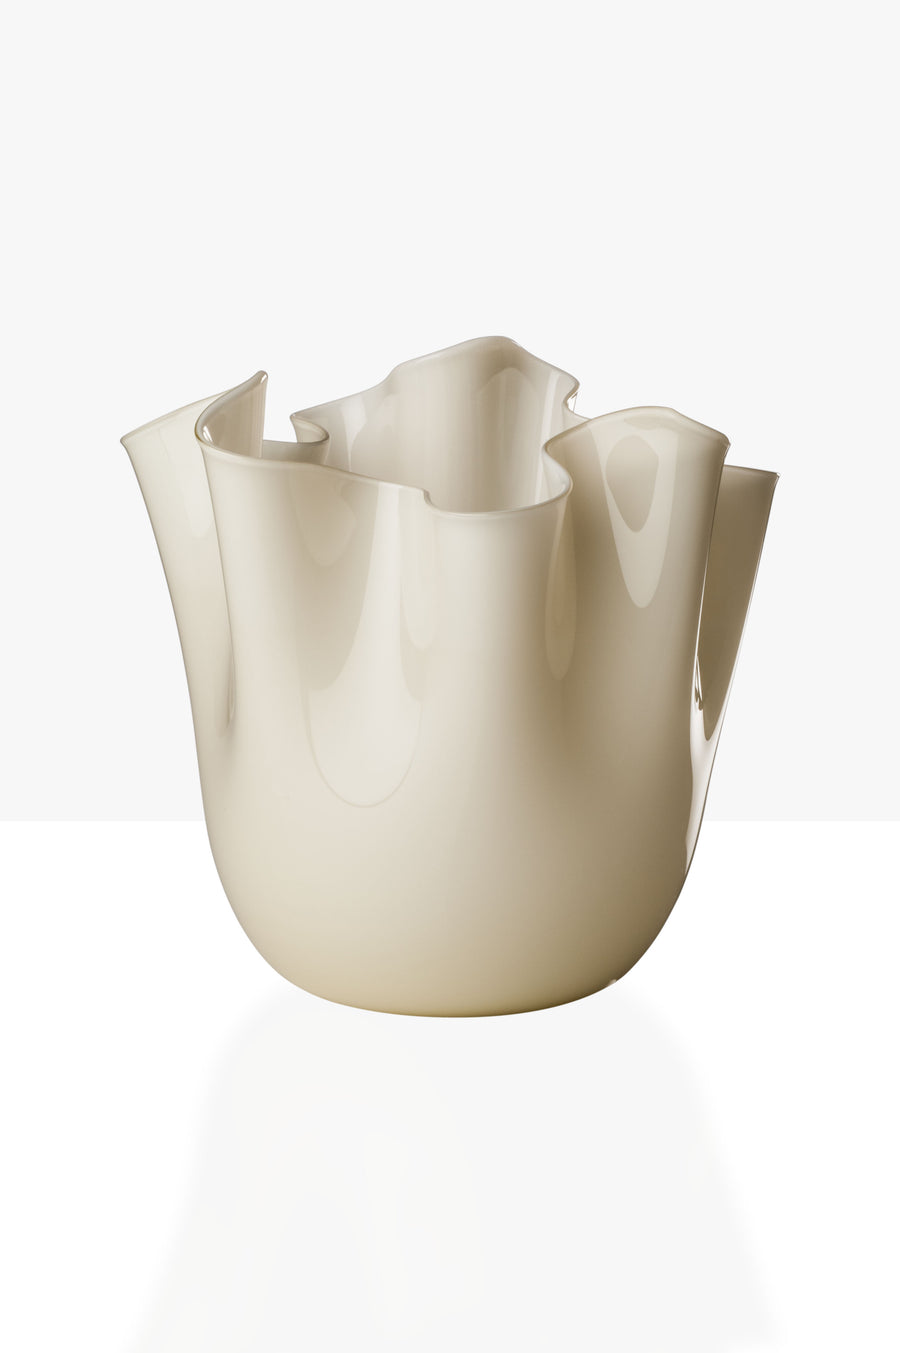 FAZZOLETTO Glass Vase by Fulvio Bianconi and Paolo Venini for Venini - DUPLEX DESIGN